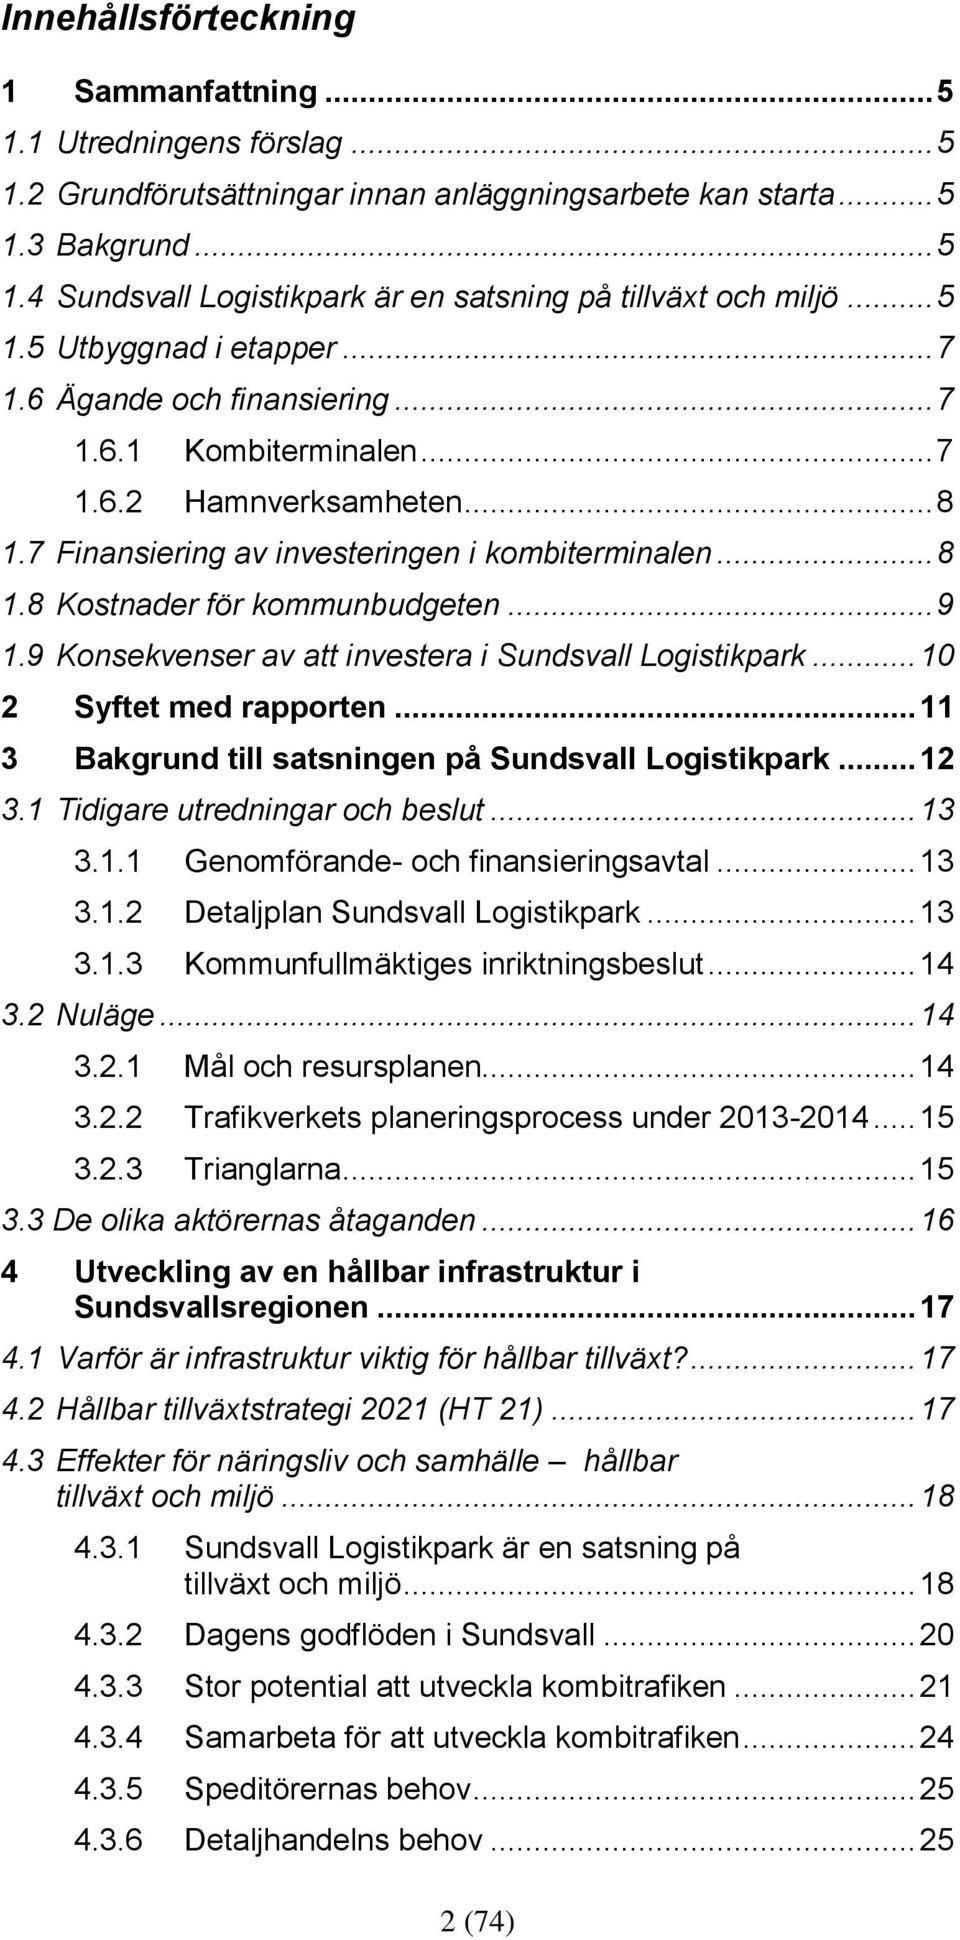 .. 9 1.9 Konsekvenser av att investera i Sundsvall Logistikpark... 10 2 Syftet med rapporten... 11 3 Bakgrund till satsningen på Sundsvall Logistikpark... 12 3.1 Tidigare utredningar och beslut... 13 3.